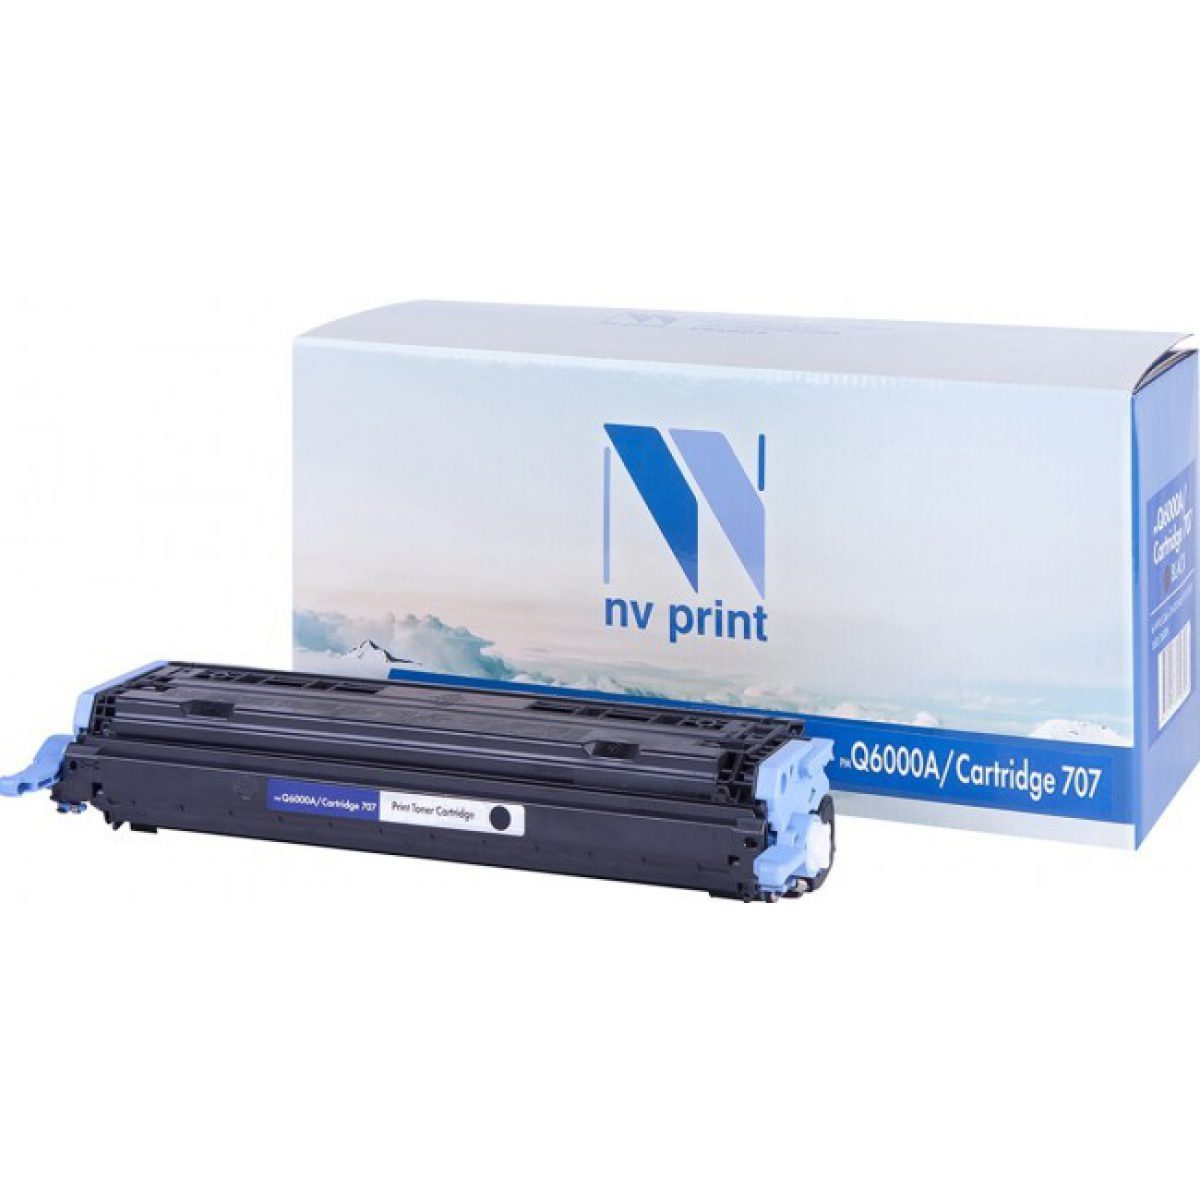 Купить картридж NV Print Q6000A / 707 черный по адекватной цене — Digit-Mall